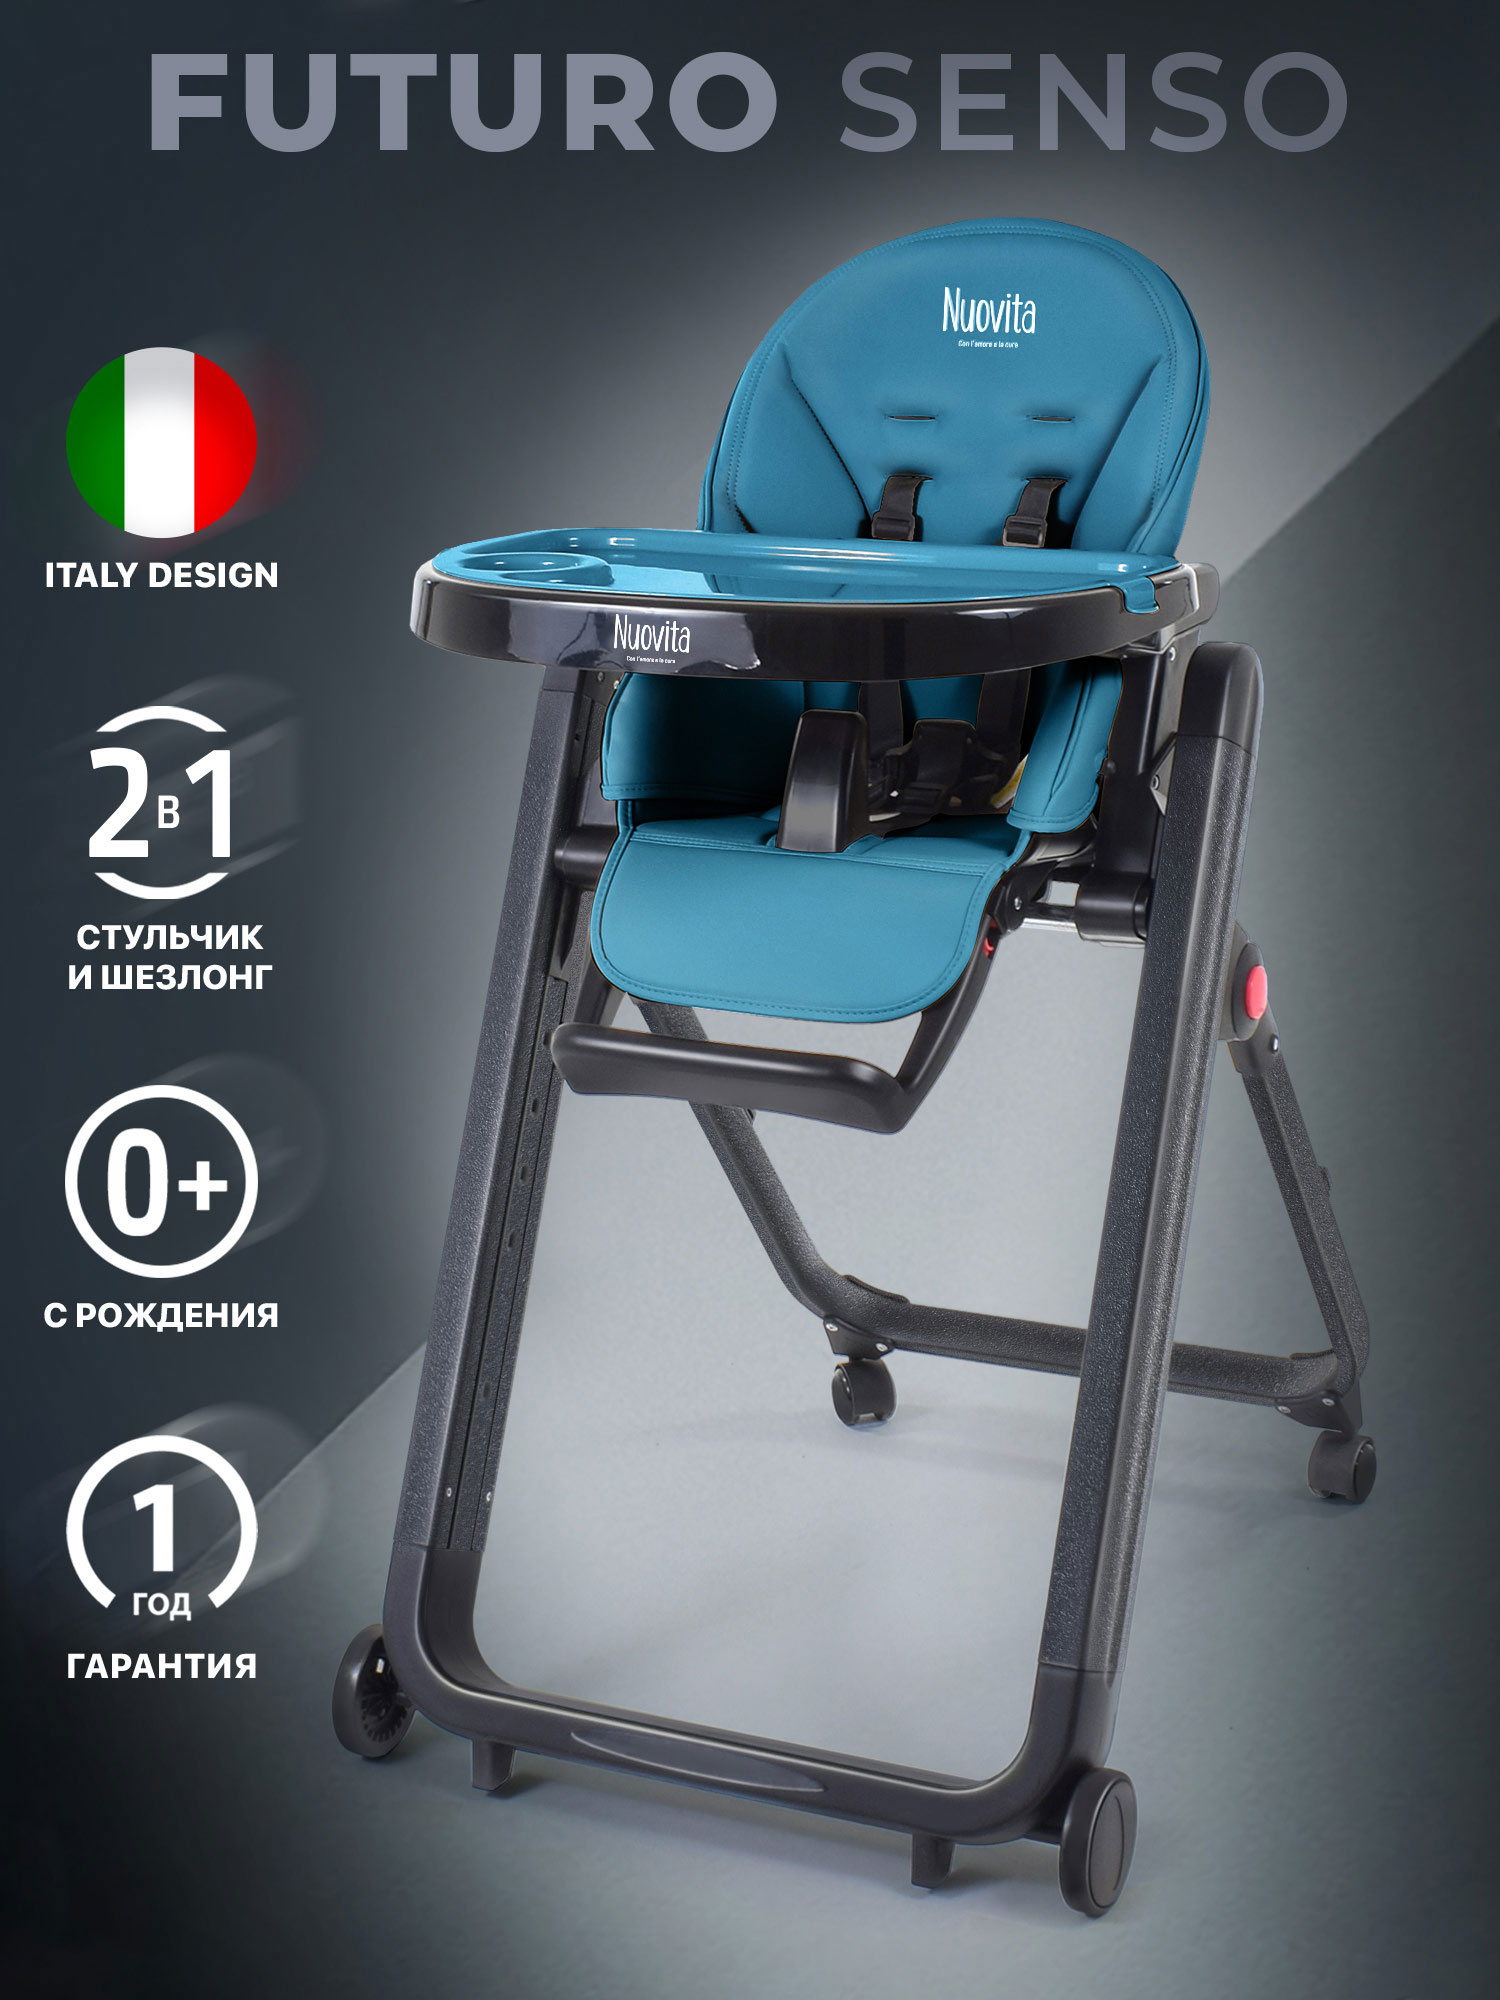 Стульчик для кормления Nuovita Futuro Senso Nero (Marino/Морской) стульчик для кормления nuovita futuro senso 2 в 1